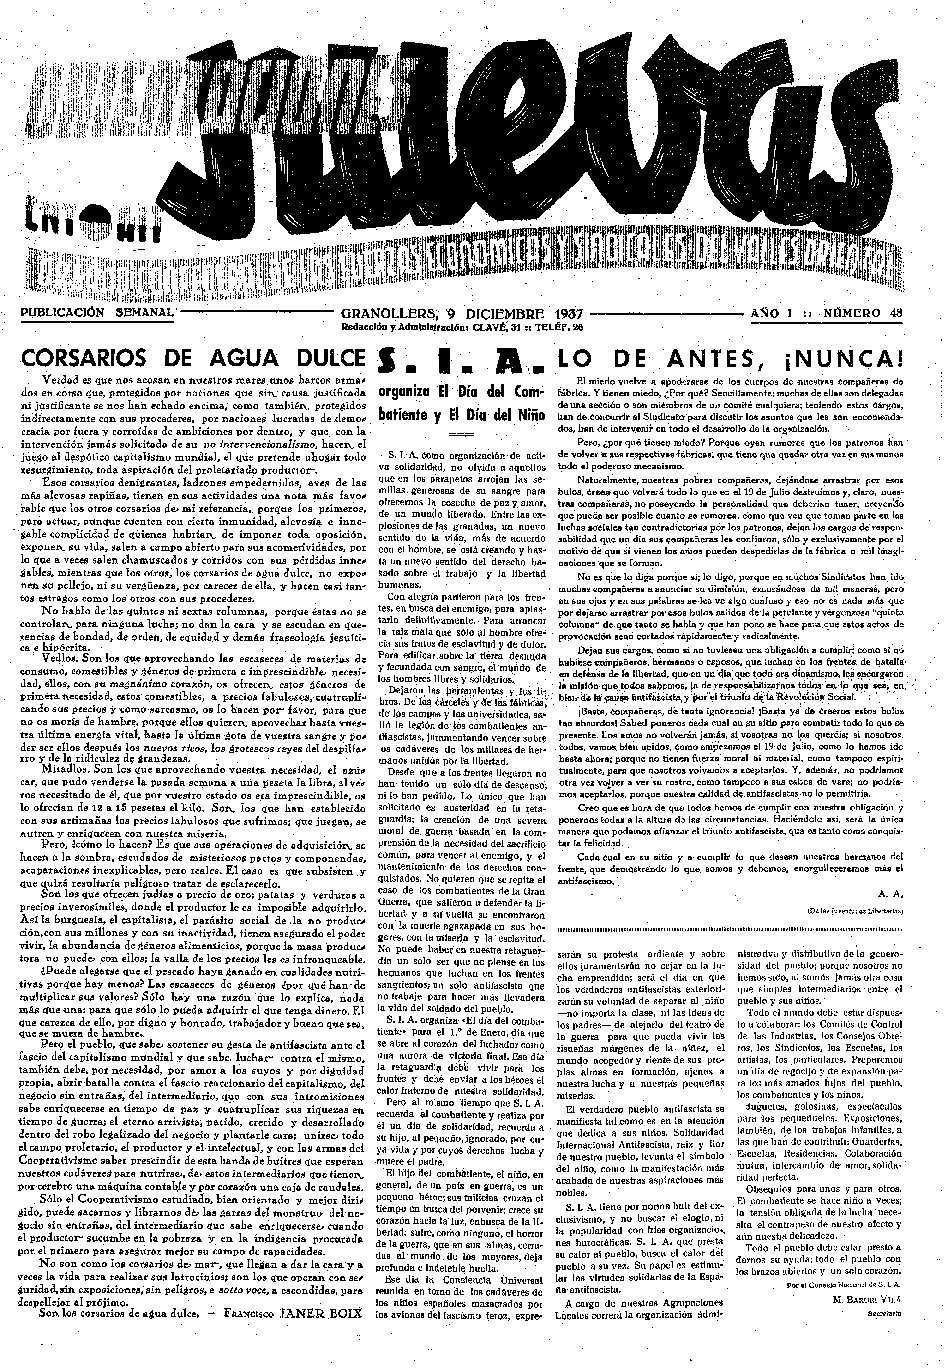 Orientaciones Nuevas, 9/12/1937 [Issue]